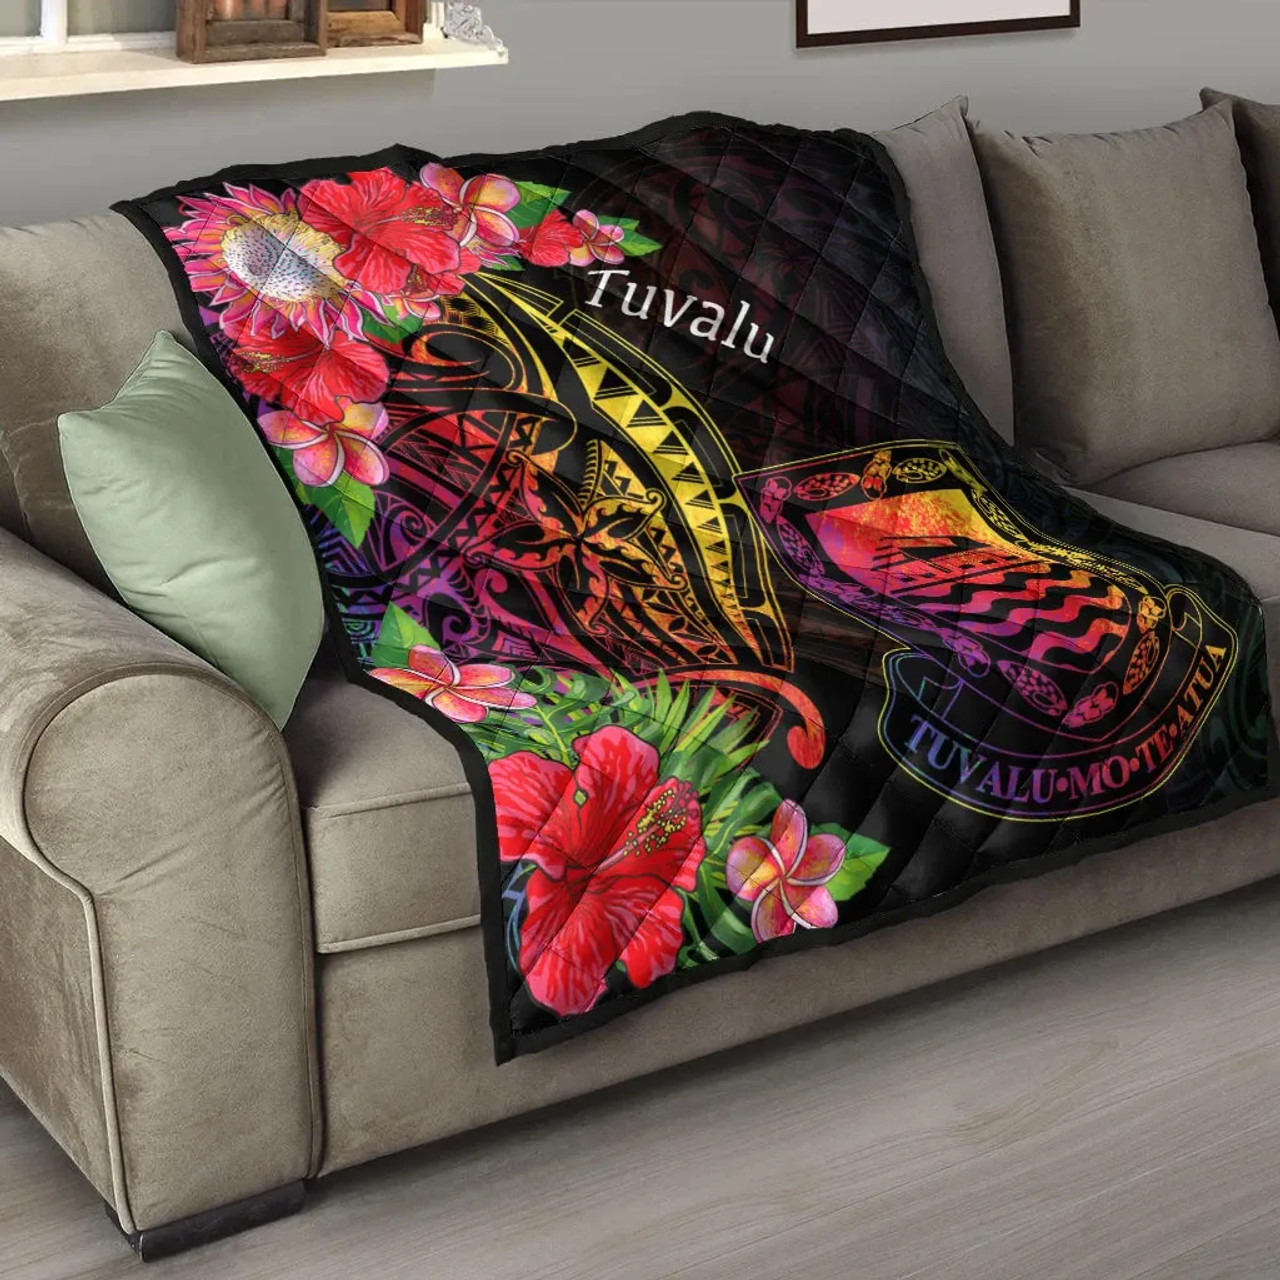 Tuvalu Premium Quilt - Tropical Hippie Style 9